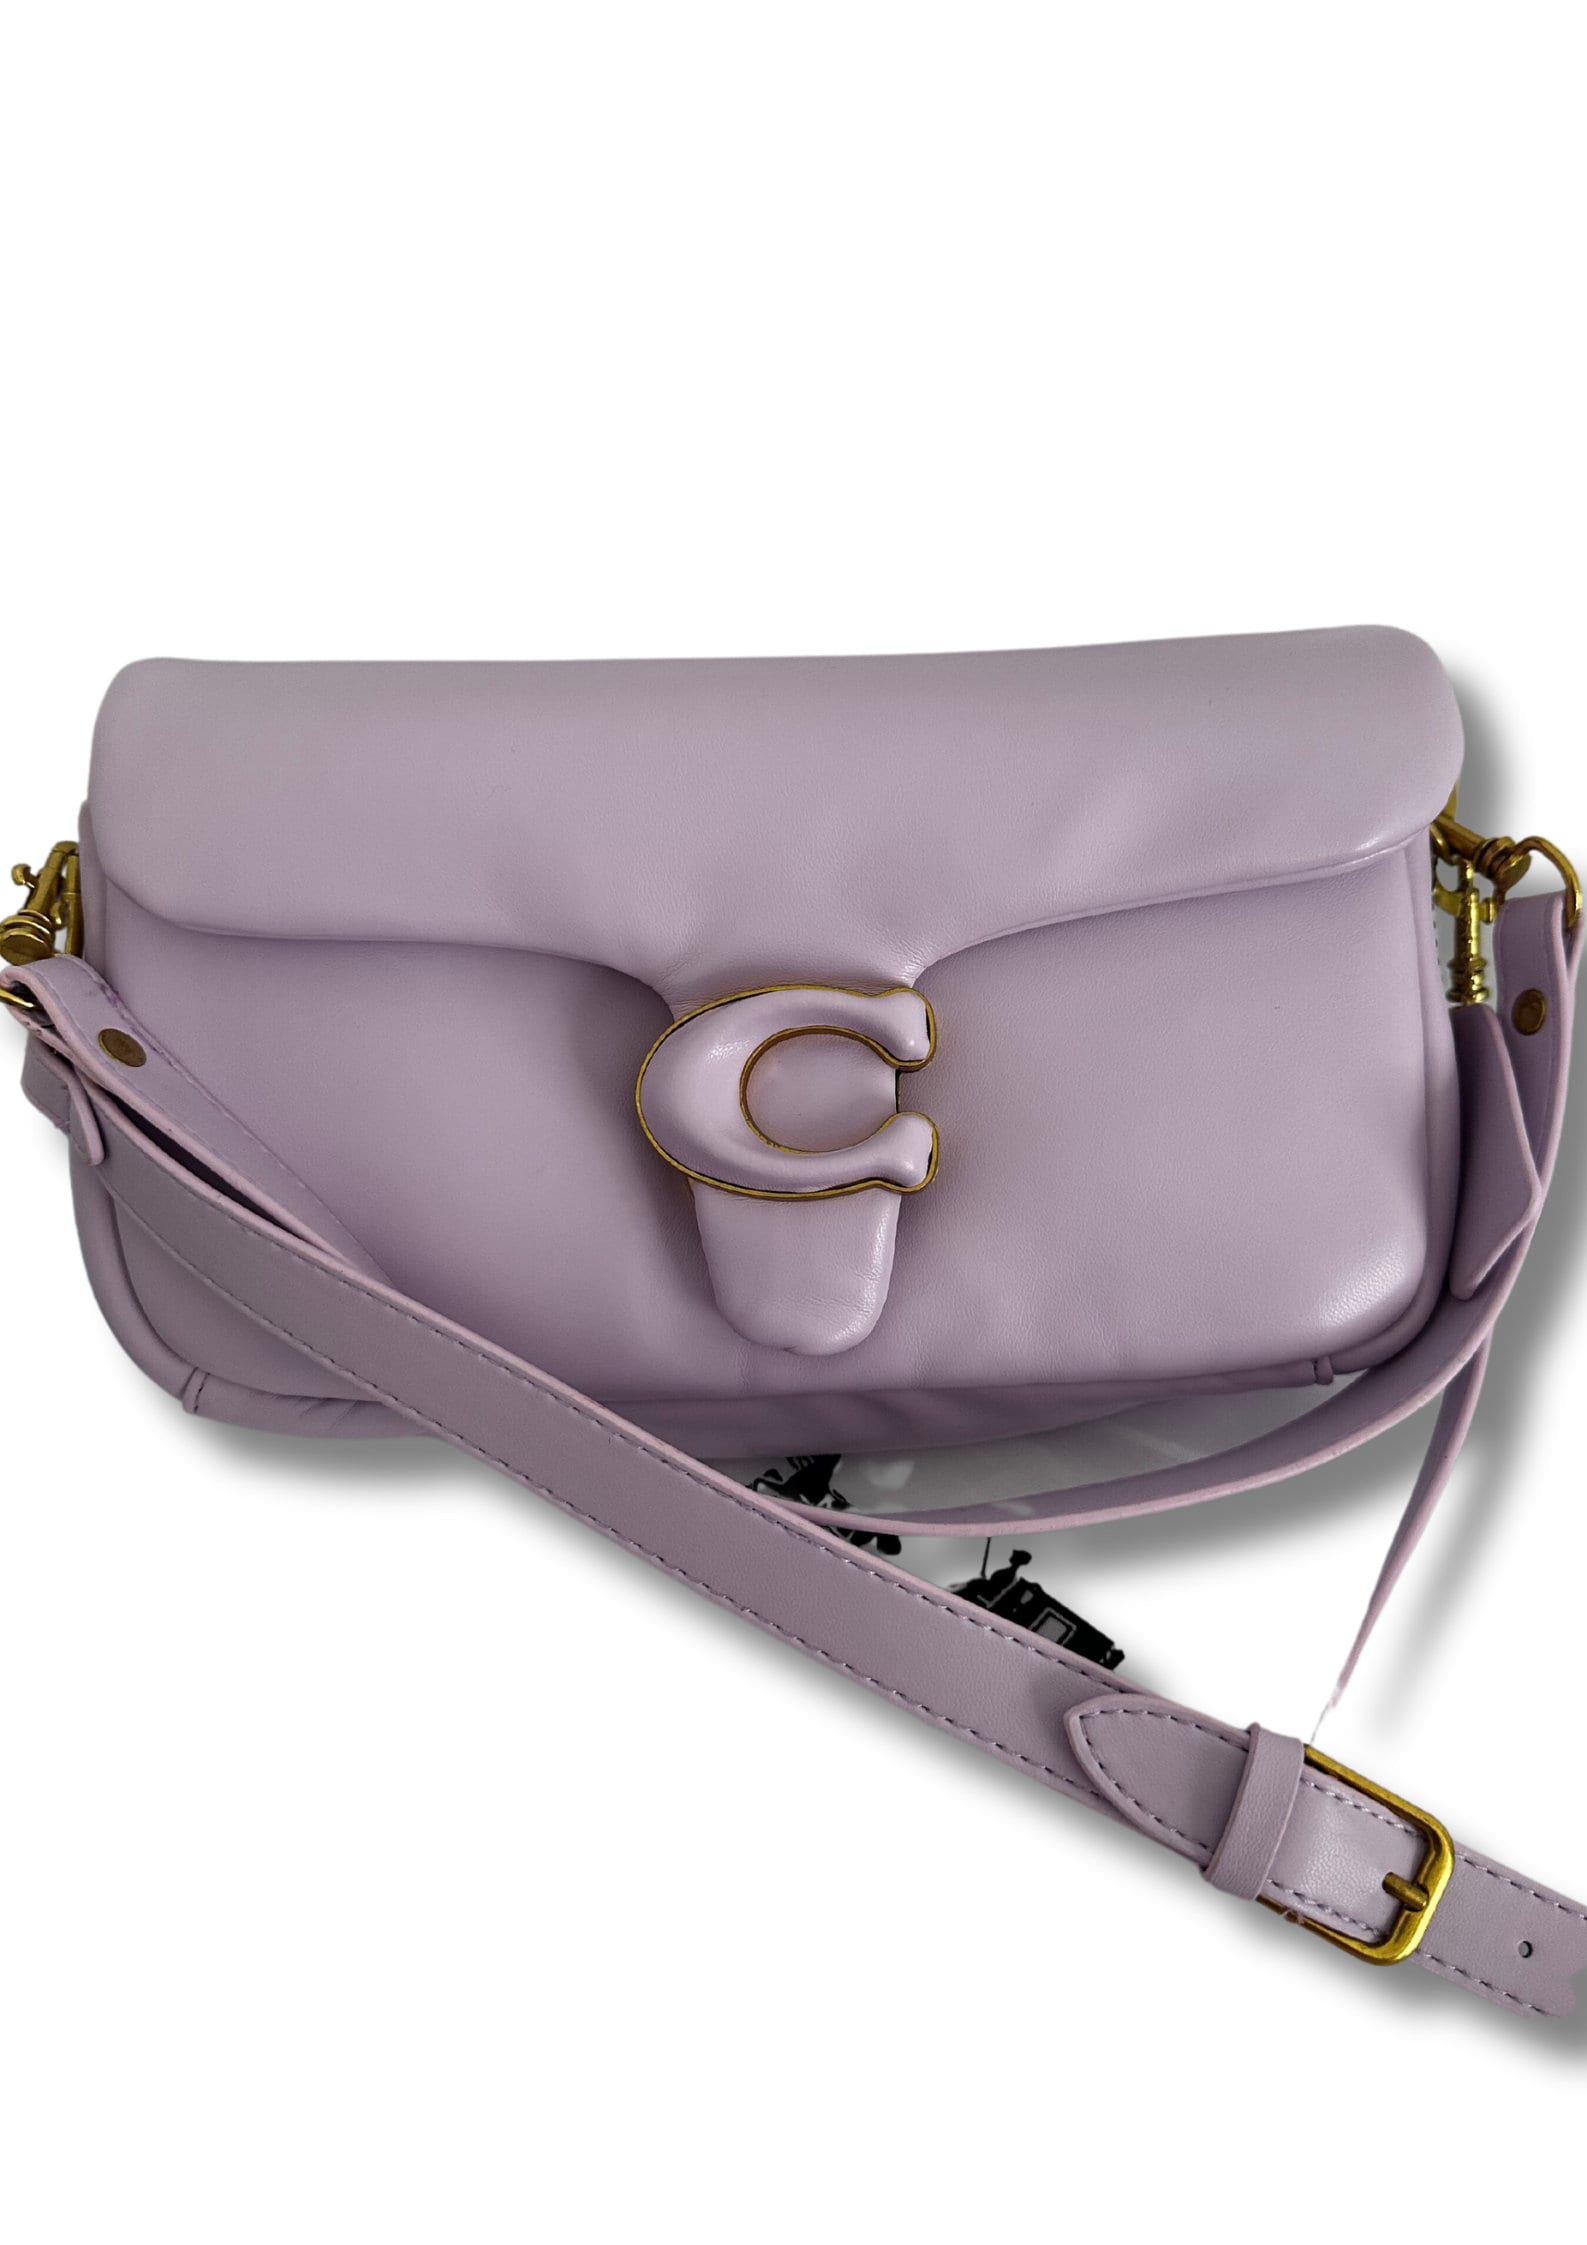 Coach Tabby Pillow Pink Bag Women's Handbag 